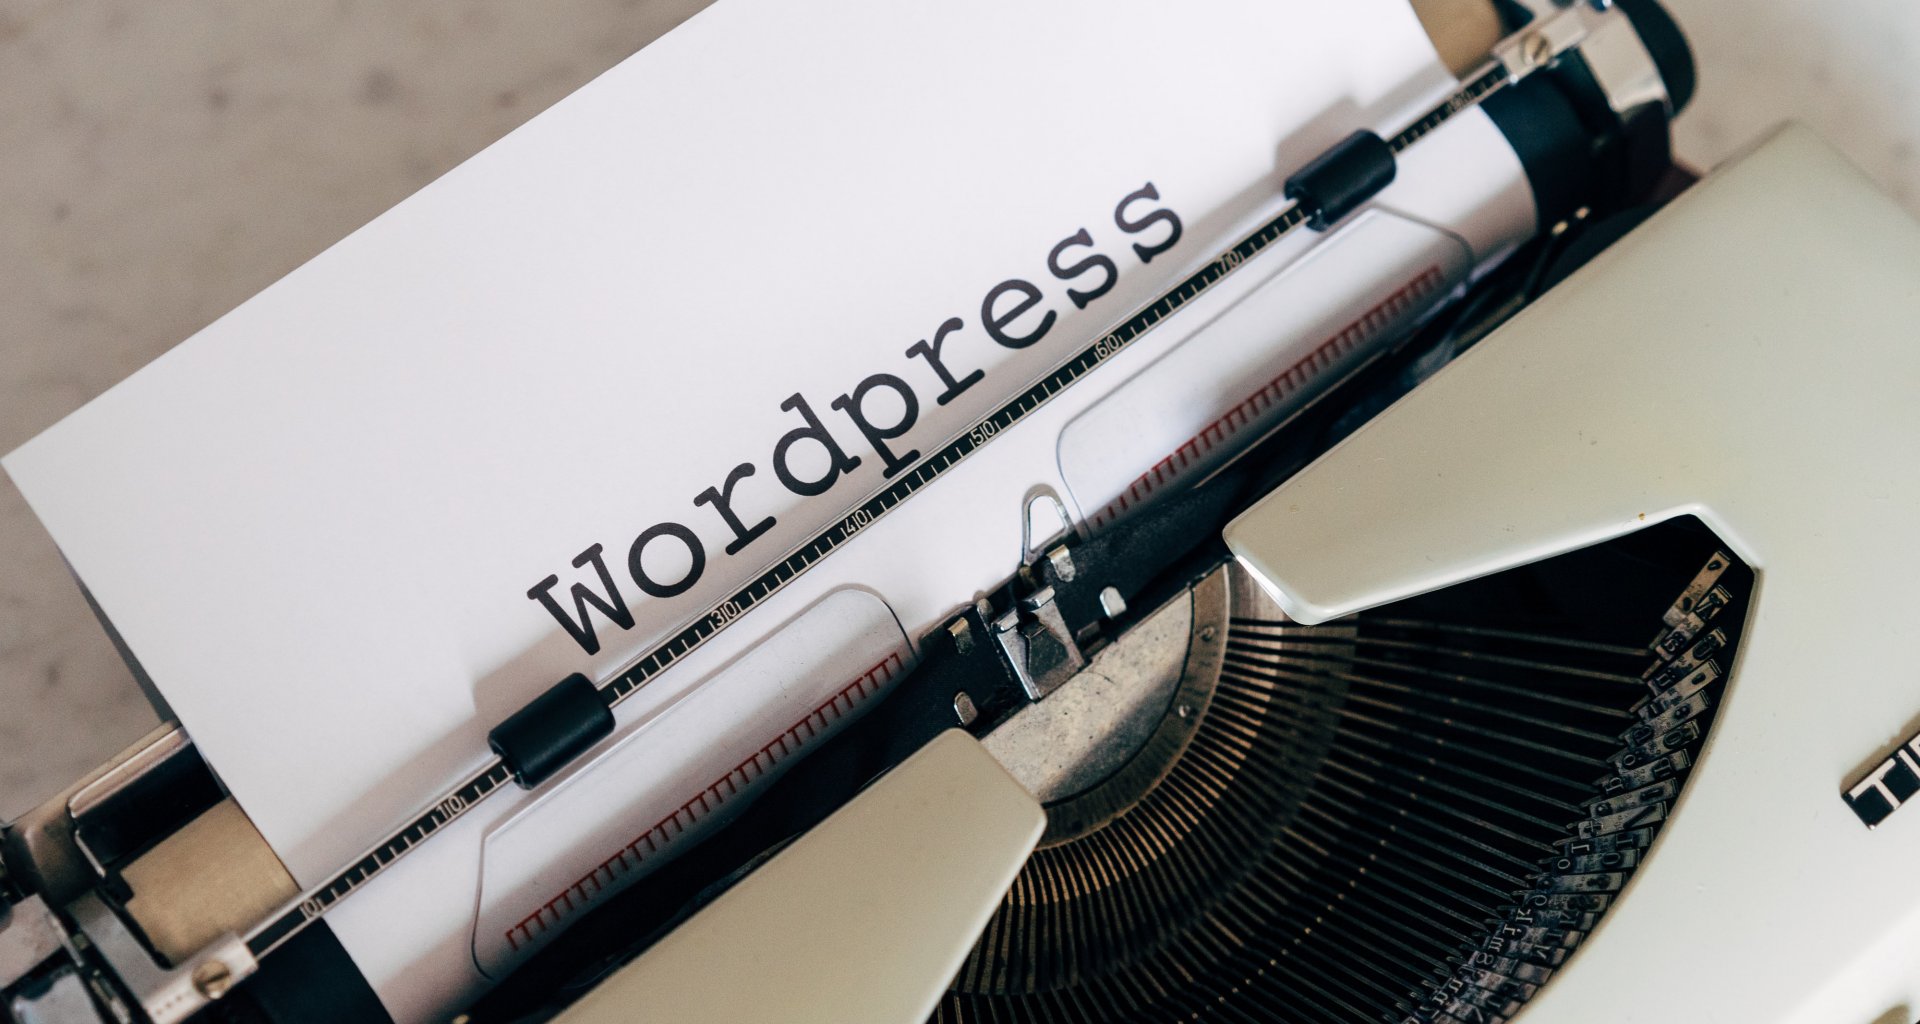 hosting terbaik untuk wordpress